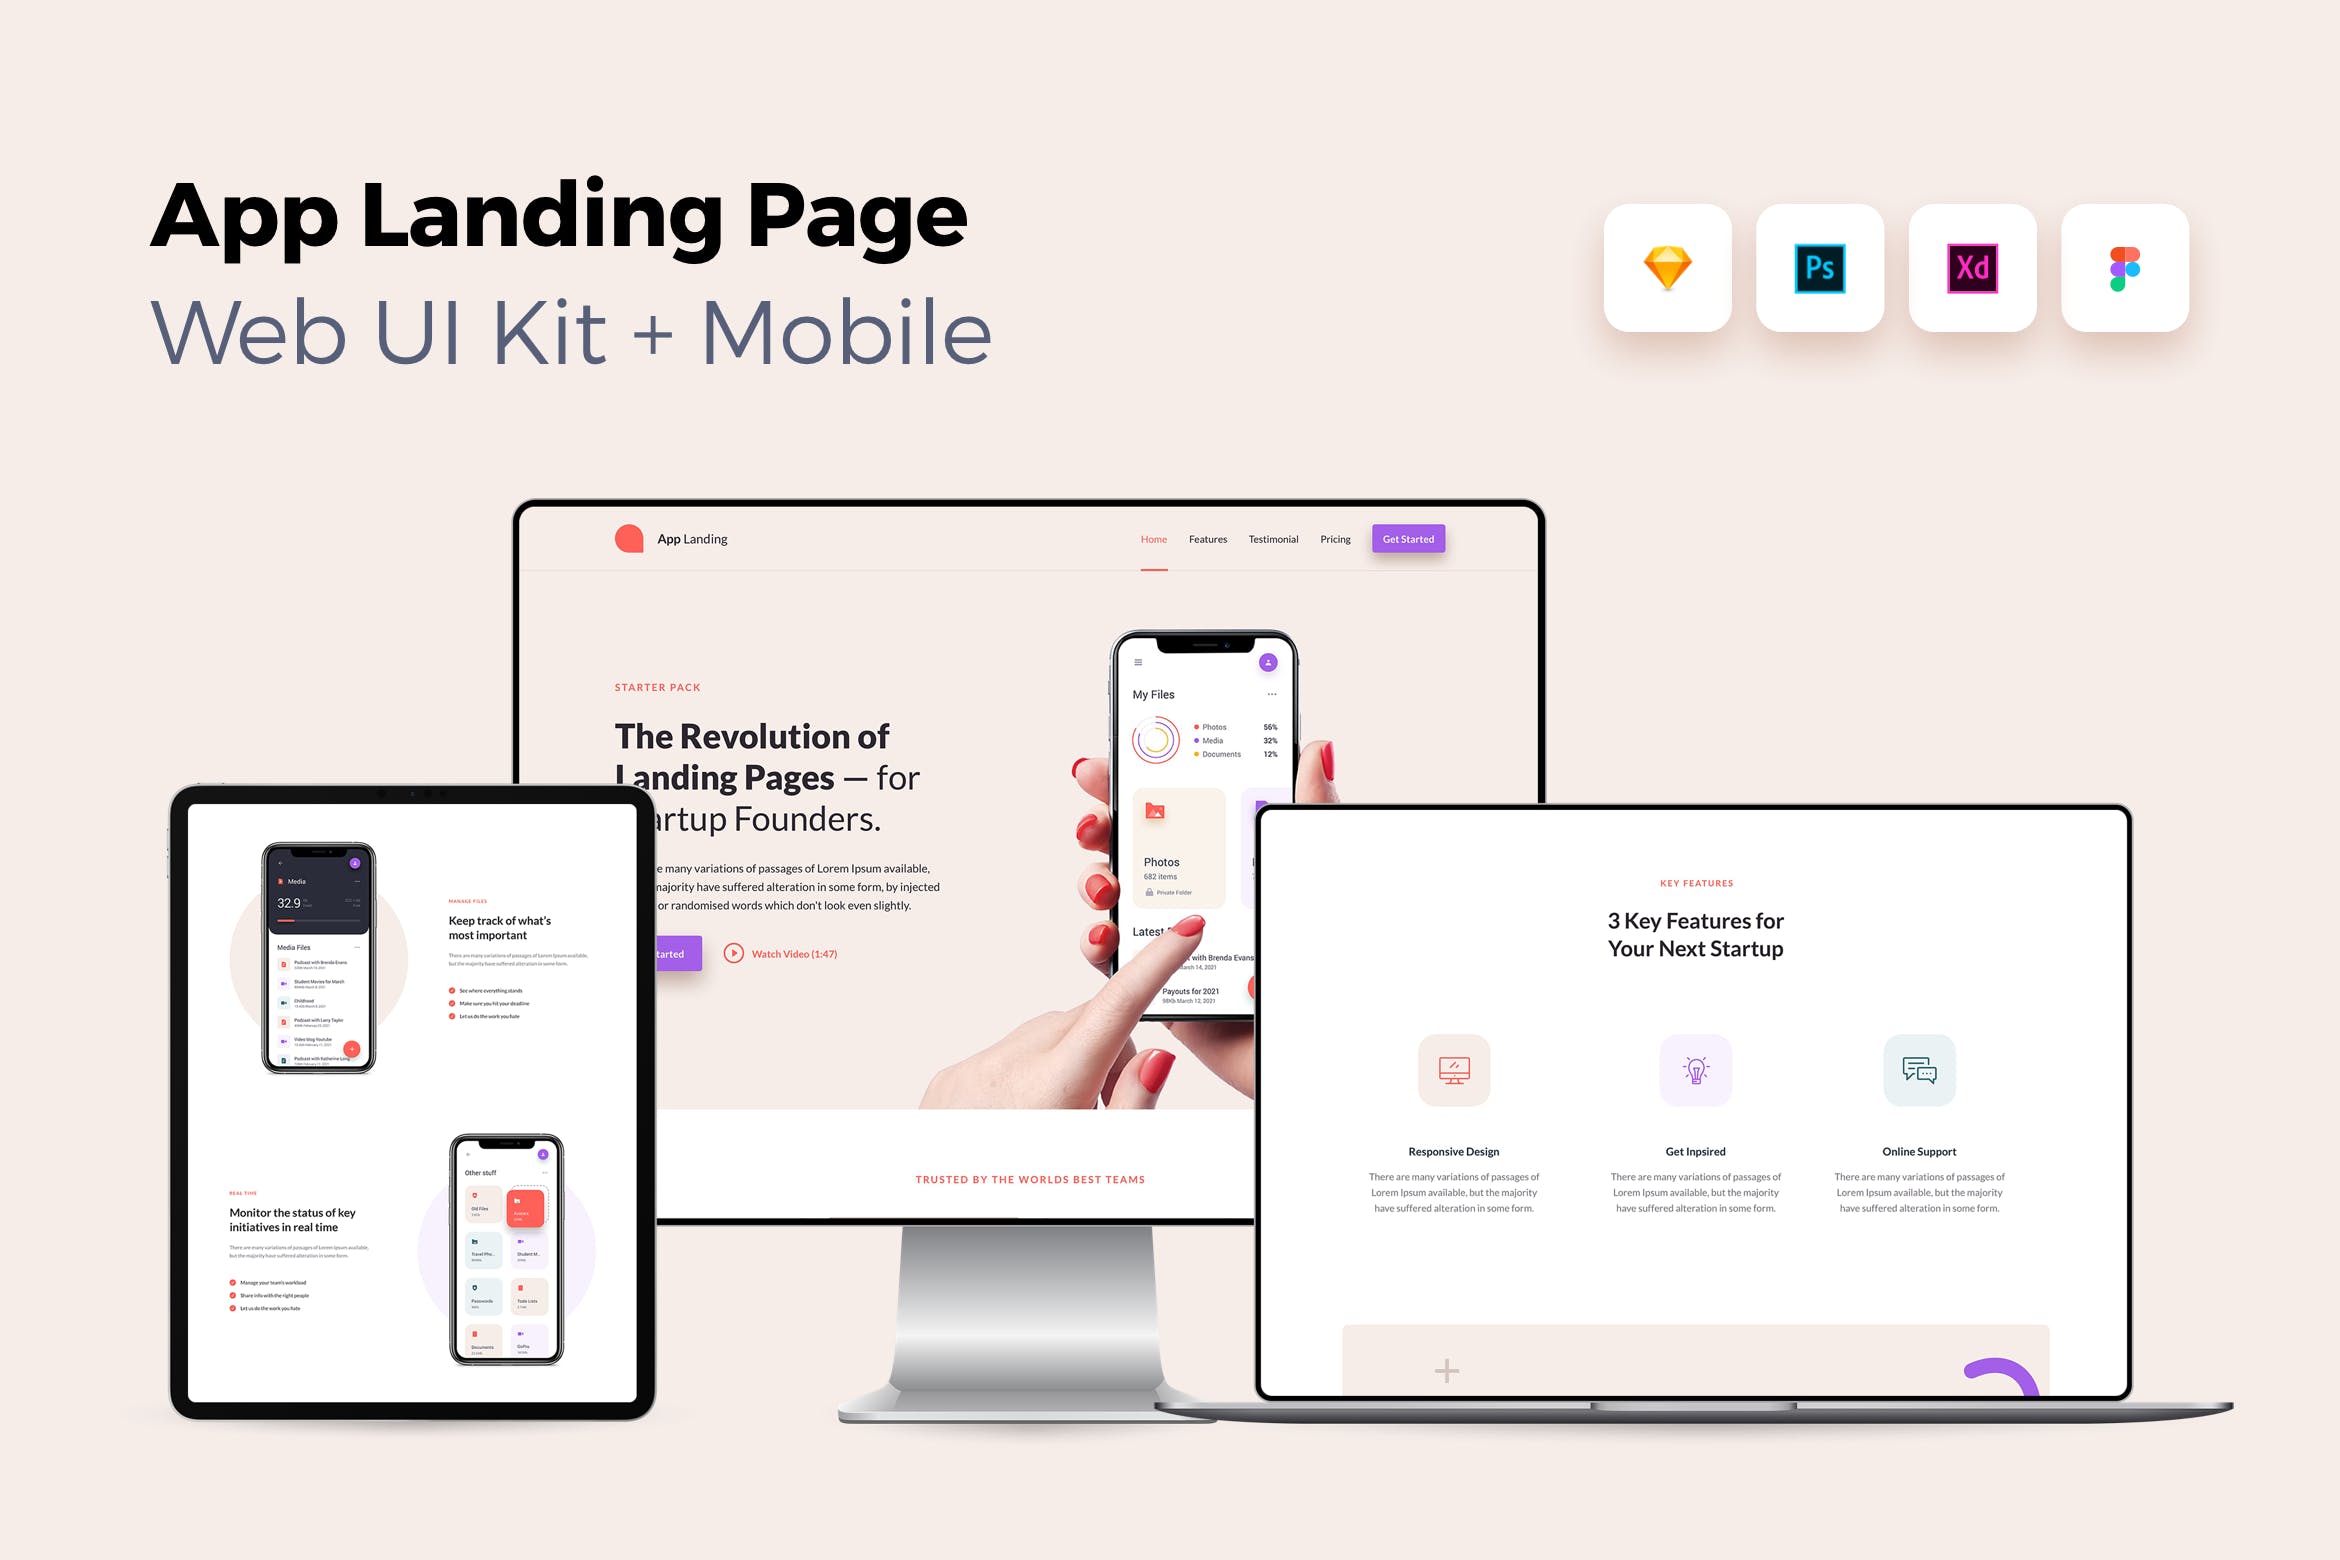 iOS端APP应用产品网站着陆页设计蚂蚁素材精选套件v1 iOS App Landing Page – Web UI Kit + Mobile – 1插图